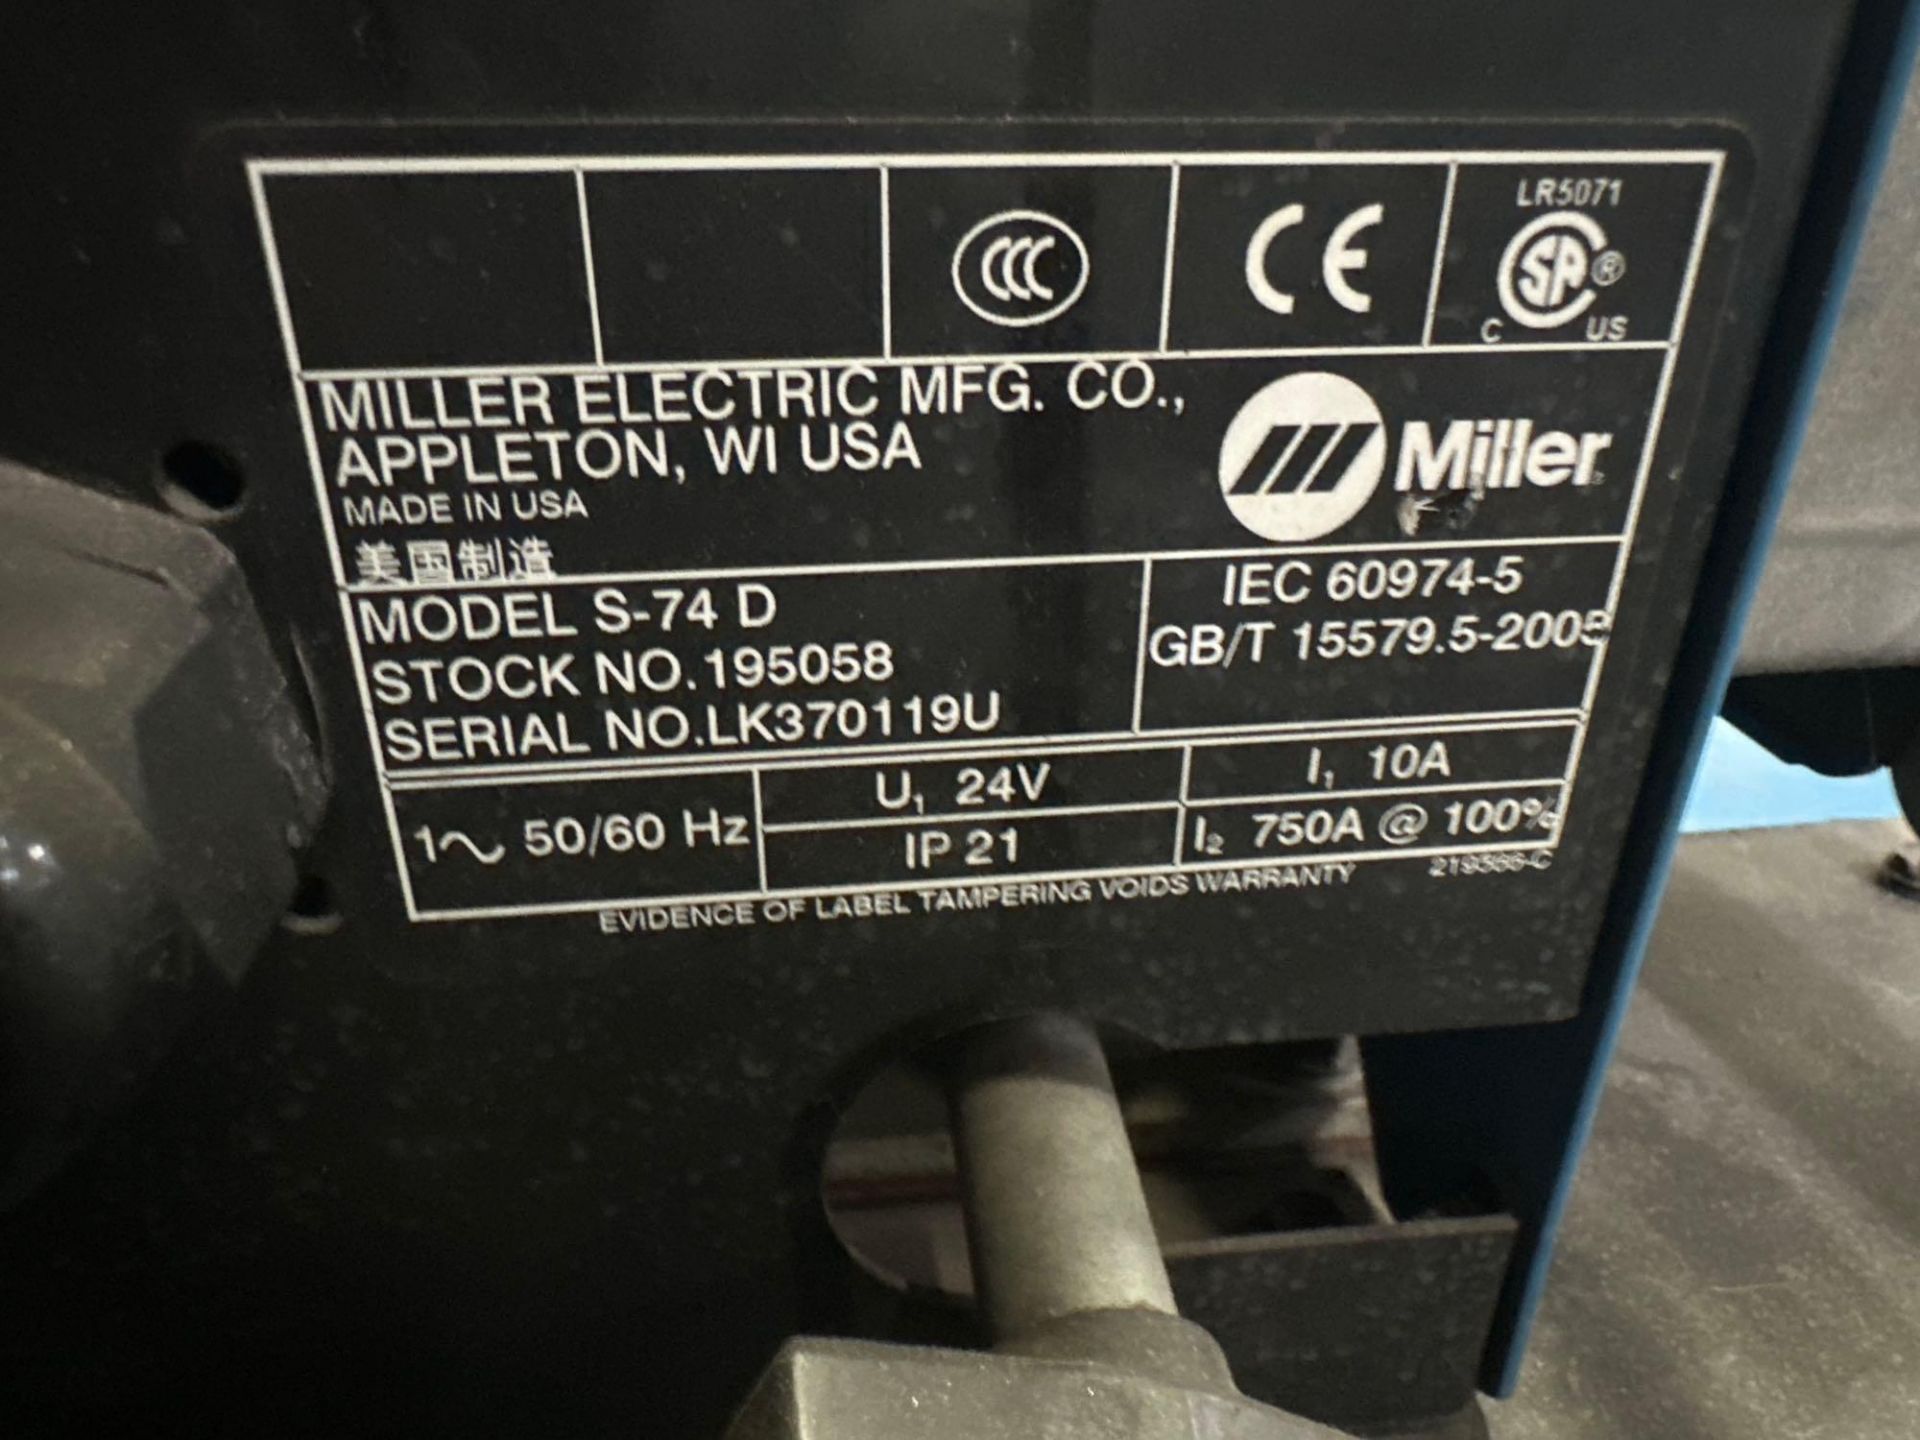 Miller Deltaweld 652 Mig Welder, 38 Volts, 450 Amps, 44 Max OCV, s/n LK396011C - Image 12 of 12